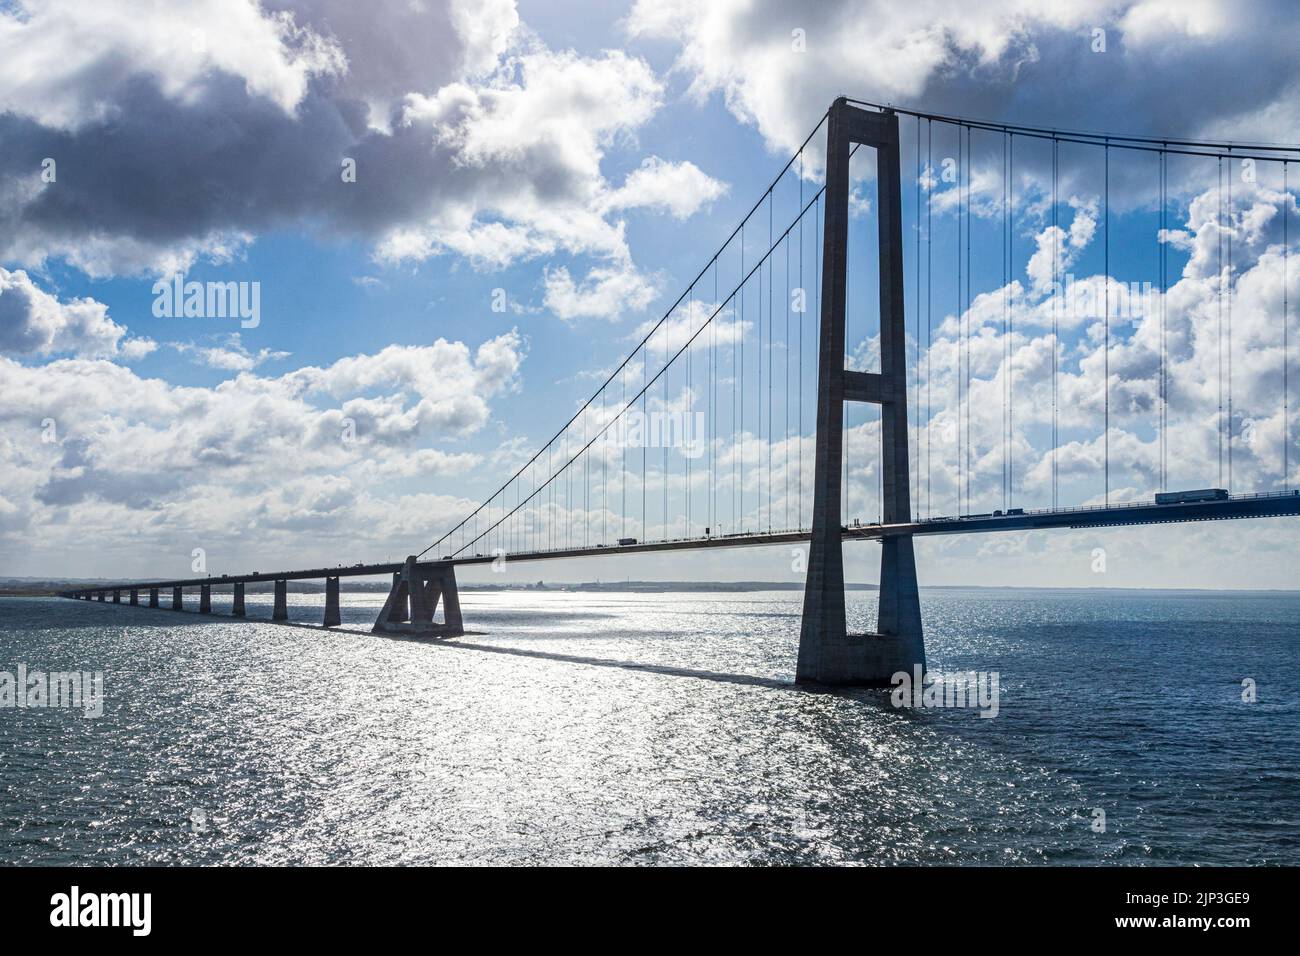 The Great Belt Bridge (Storebæltsbroen) between the islands of Zealand and Funen, Denmark Stock Photo